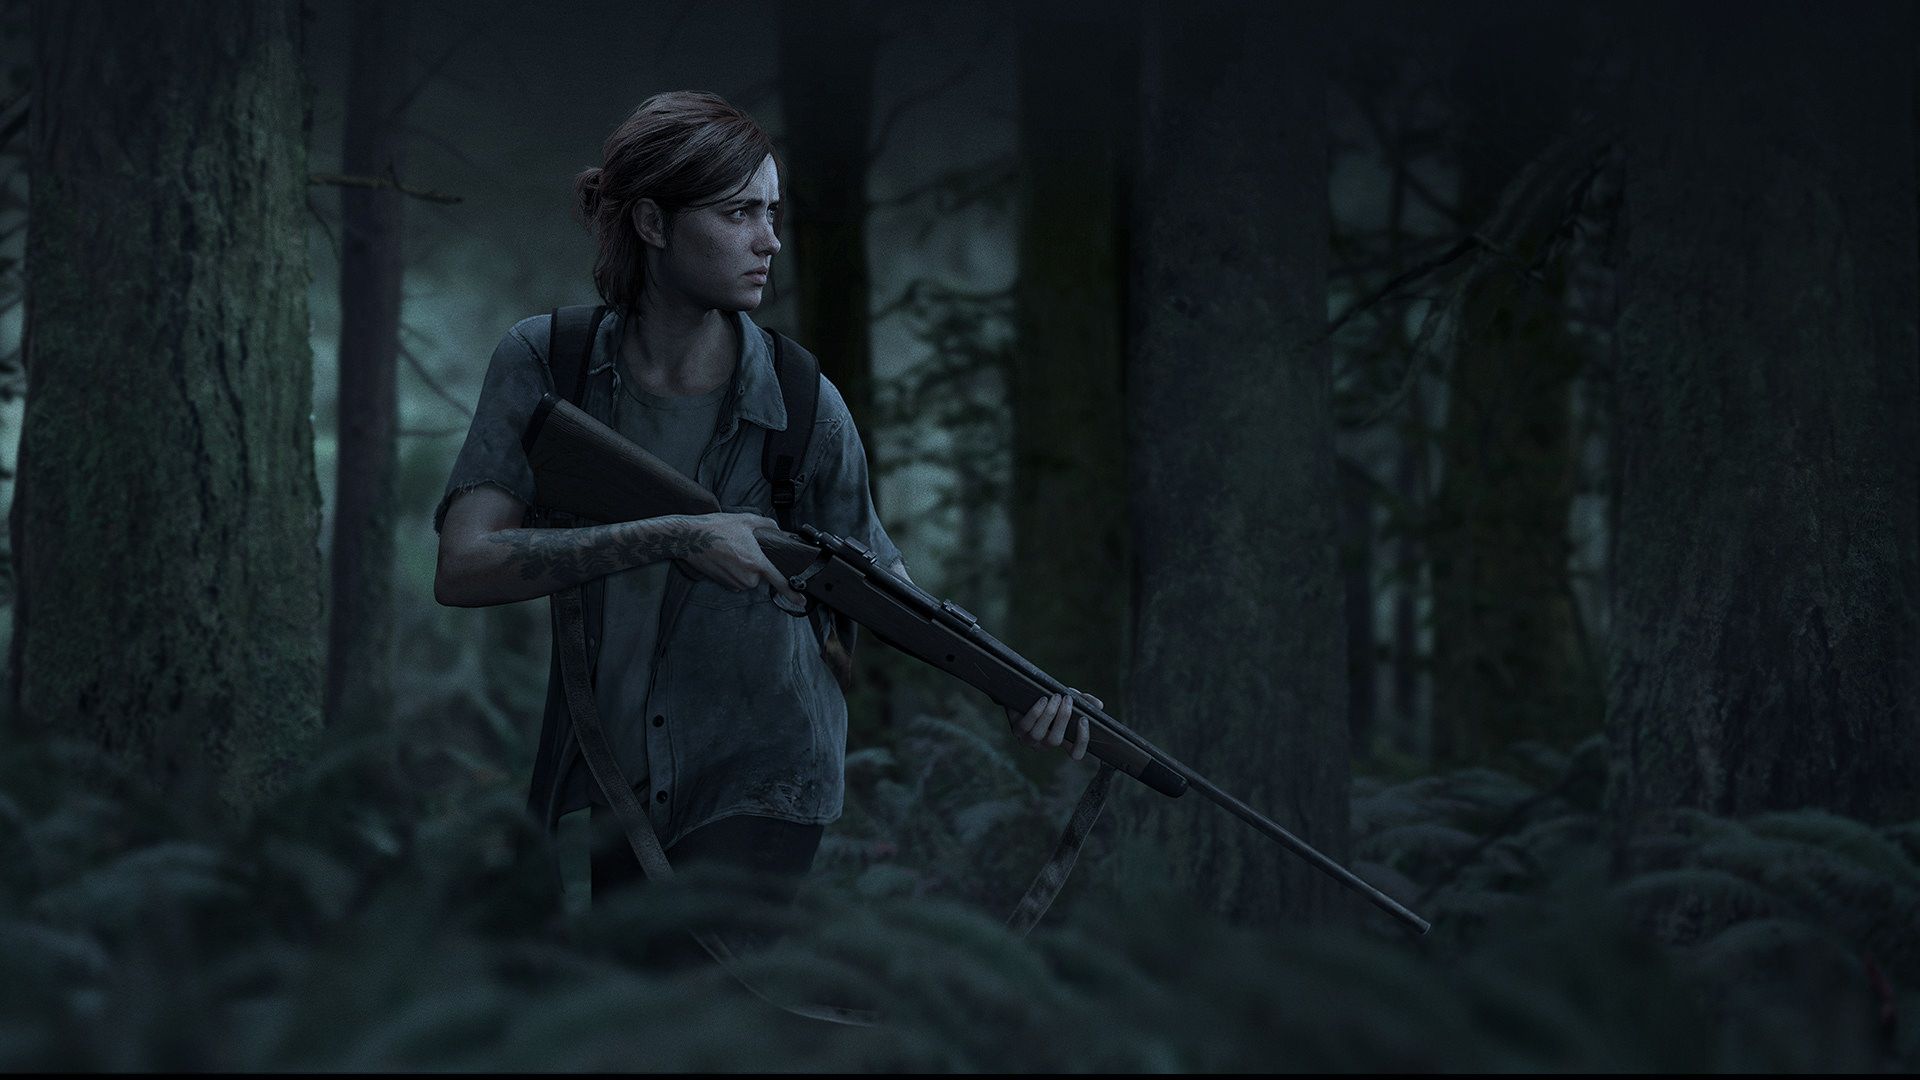 بازی The Last of Us 2 با کنار زدن The Witcher 3 پرافتخارترین بازی تاریخ شد